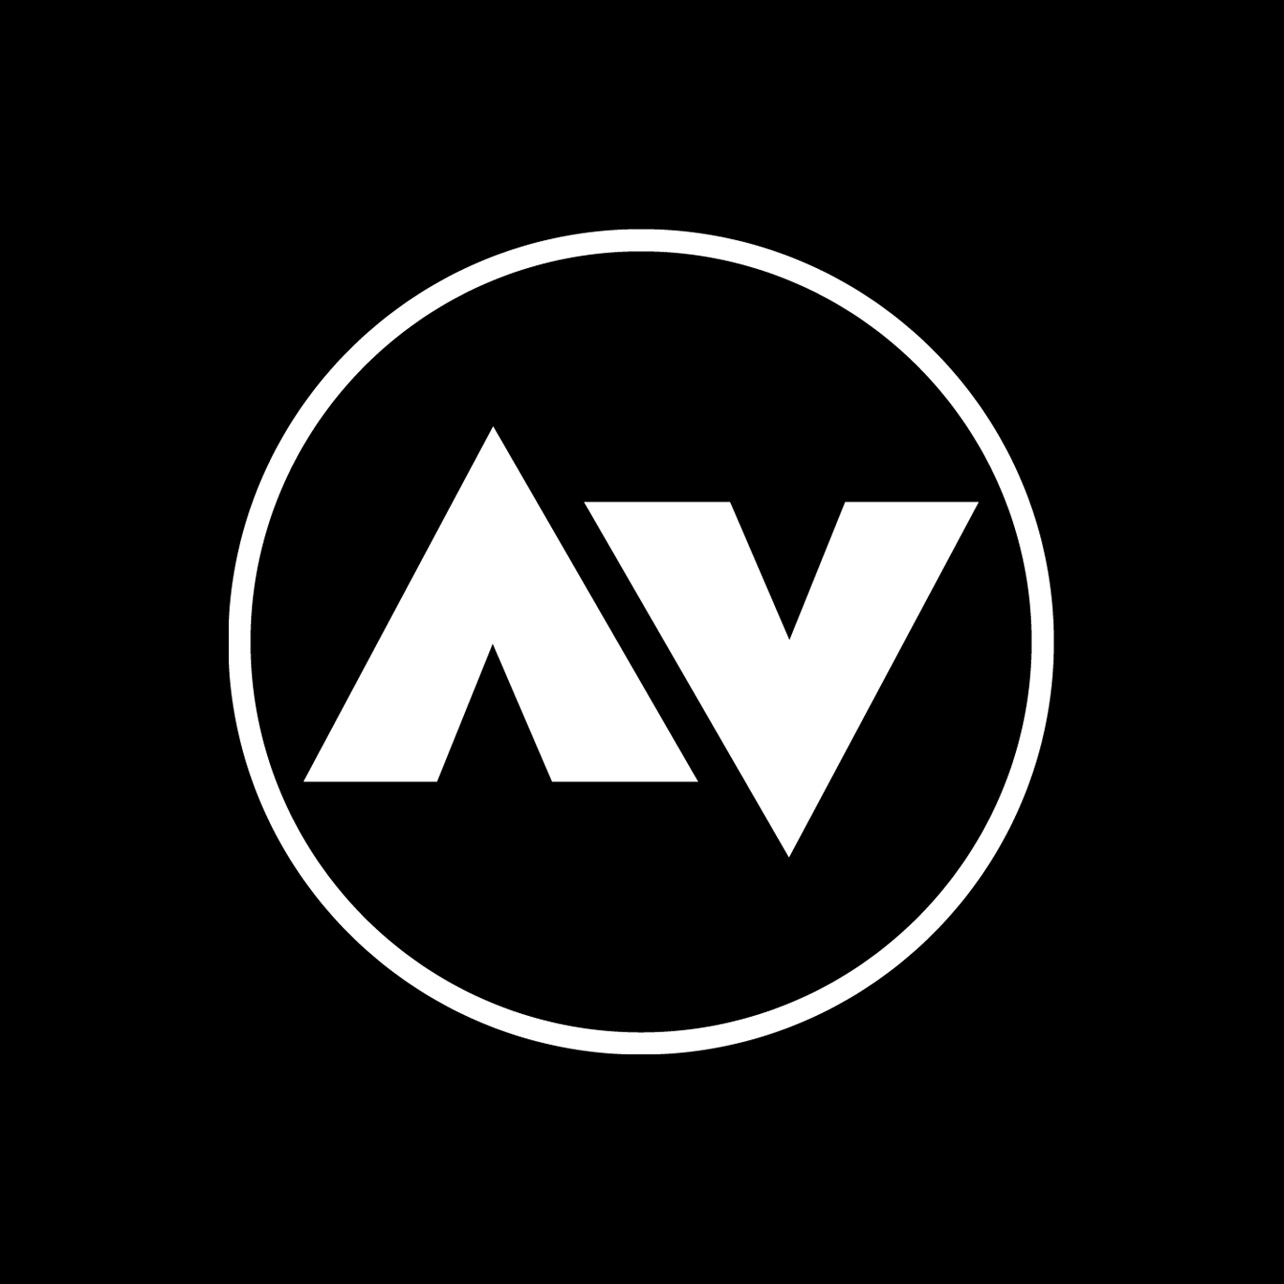 Logo, AV, Made by Therwiz Design